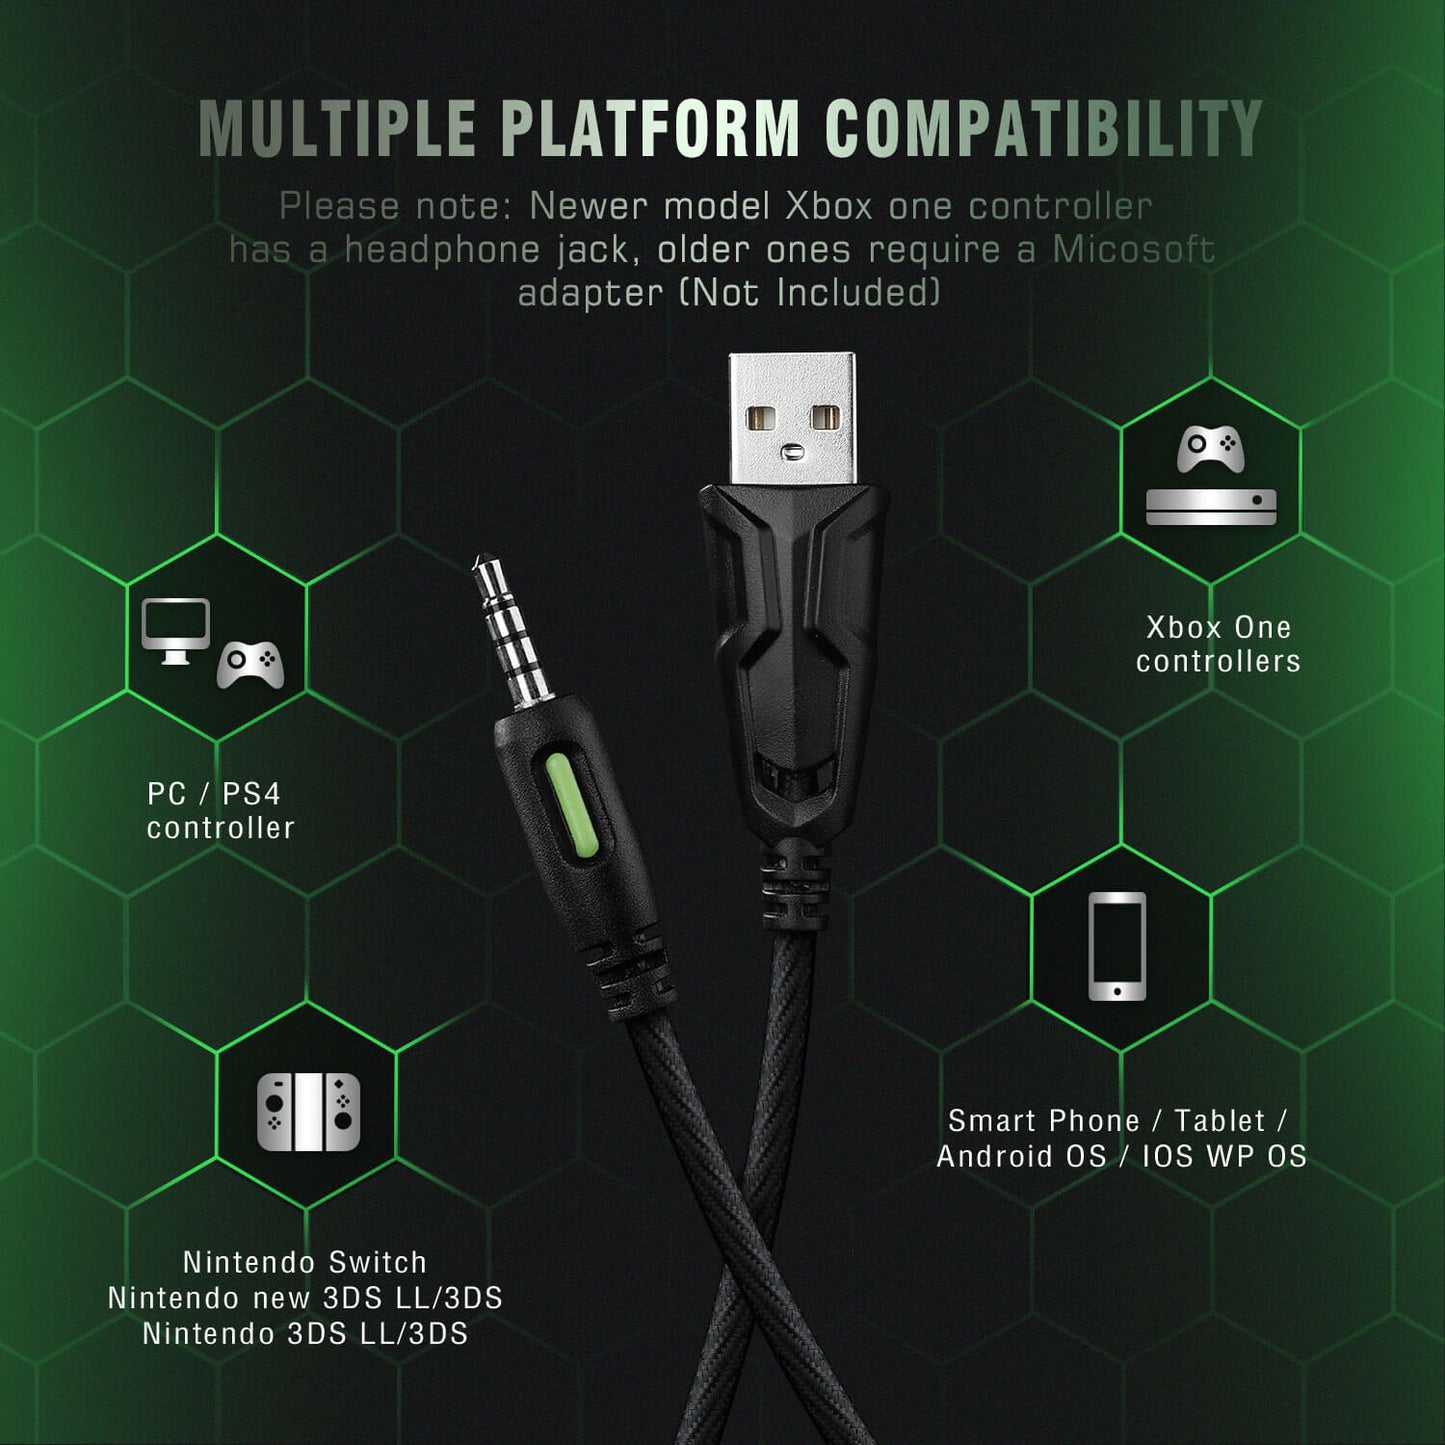 K2 Green Gaming Headset